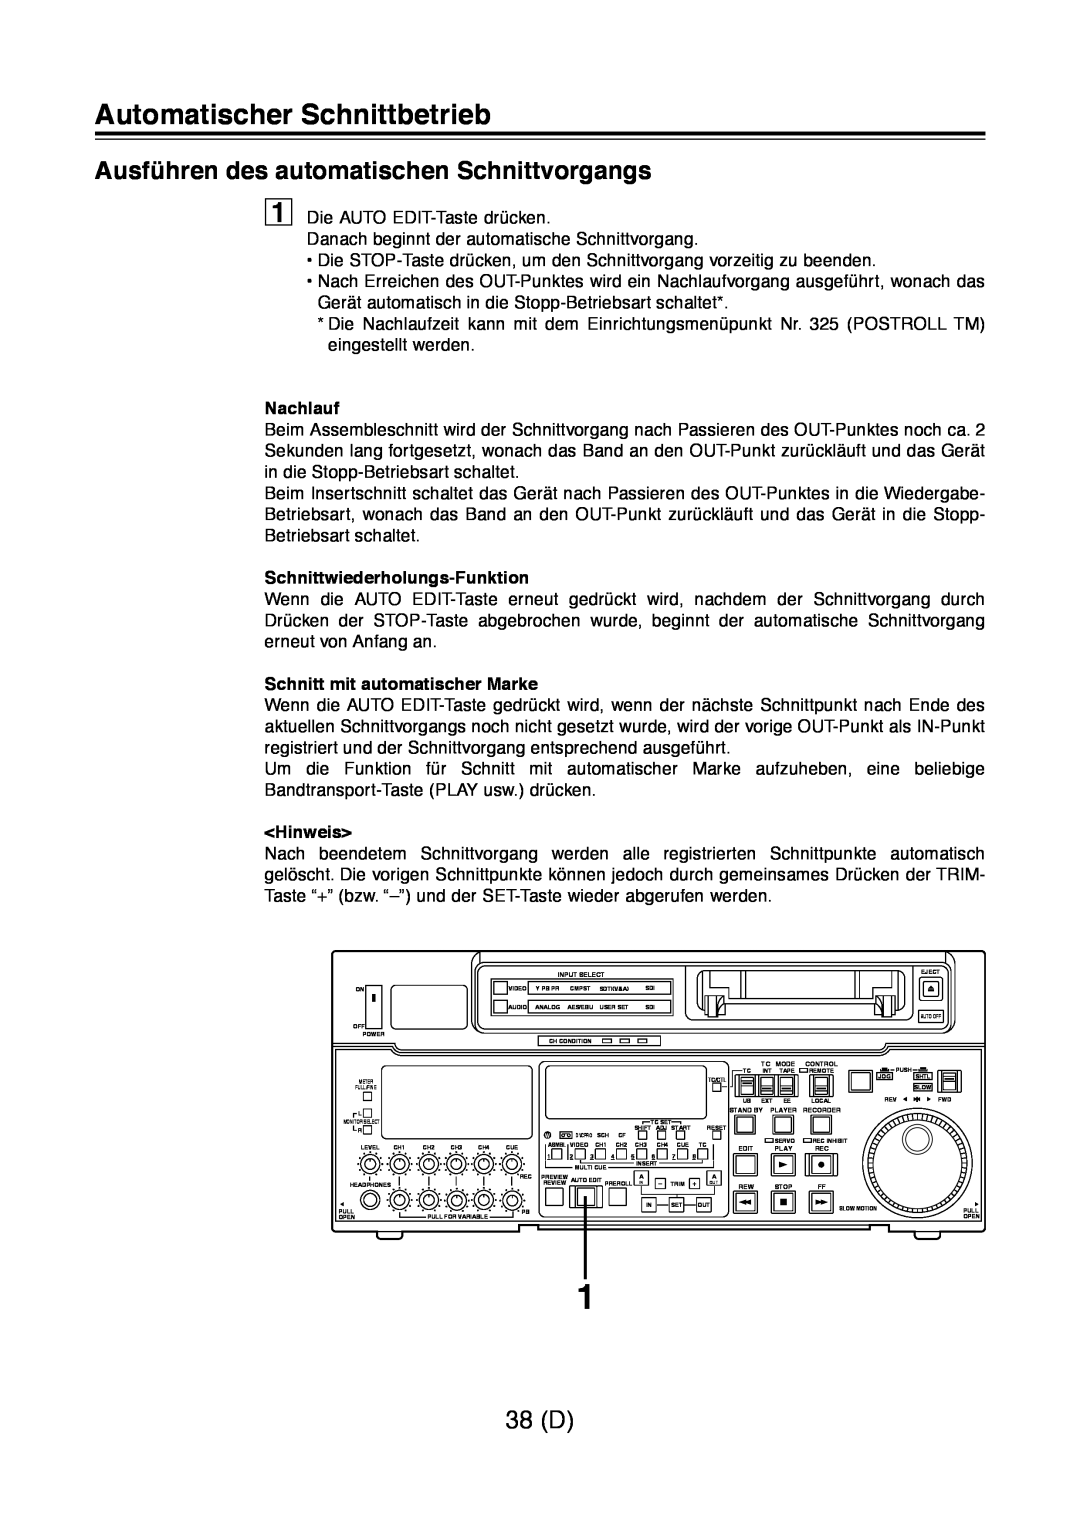 Panasonic AJ-D960 Ausführen des automatischen Schnittvorgangs, 38 D, Nachlauf, Schnittwiederholungs-Funktion, Hinweis 